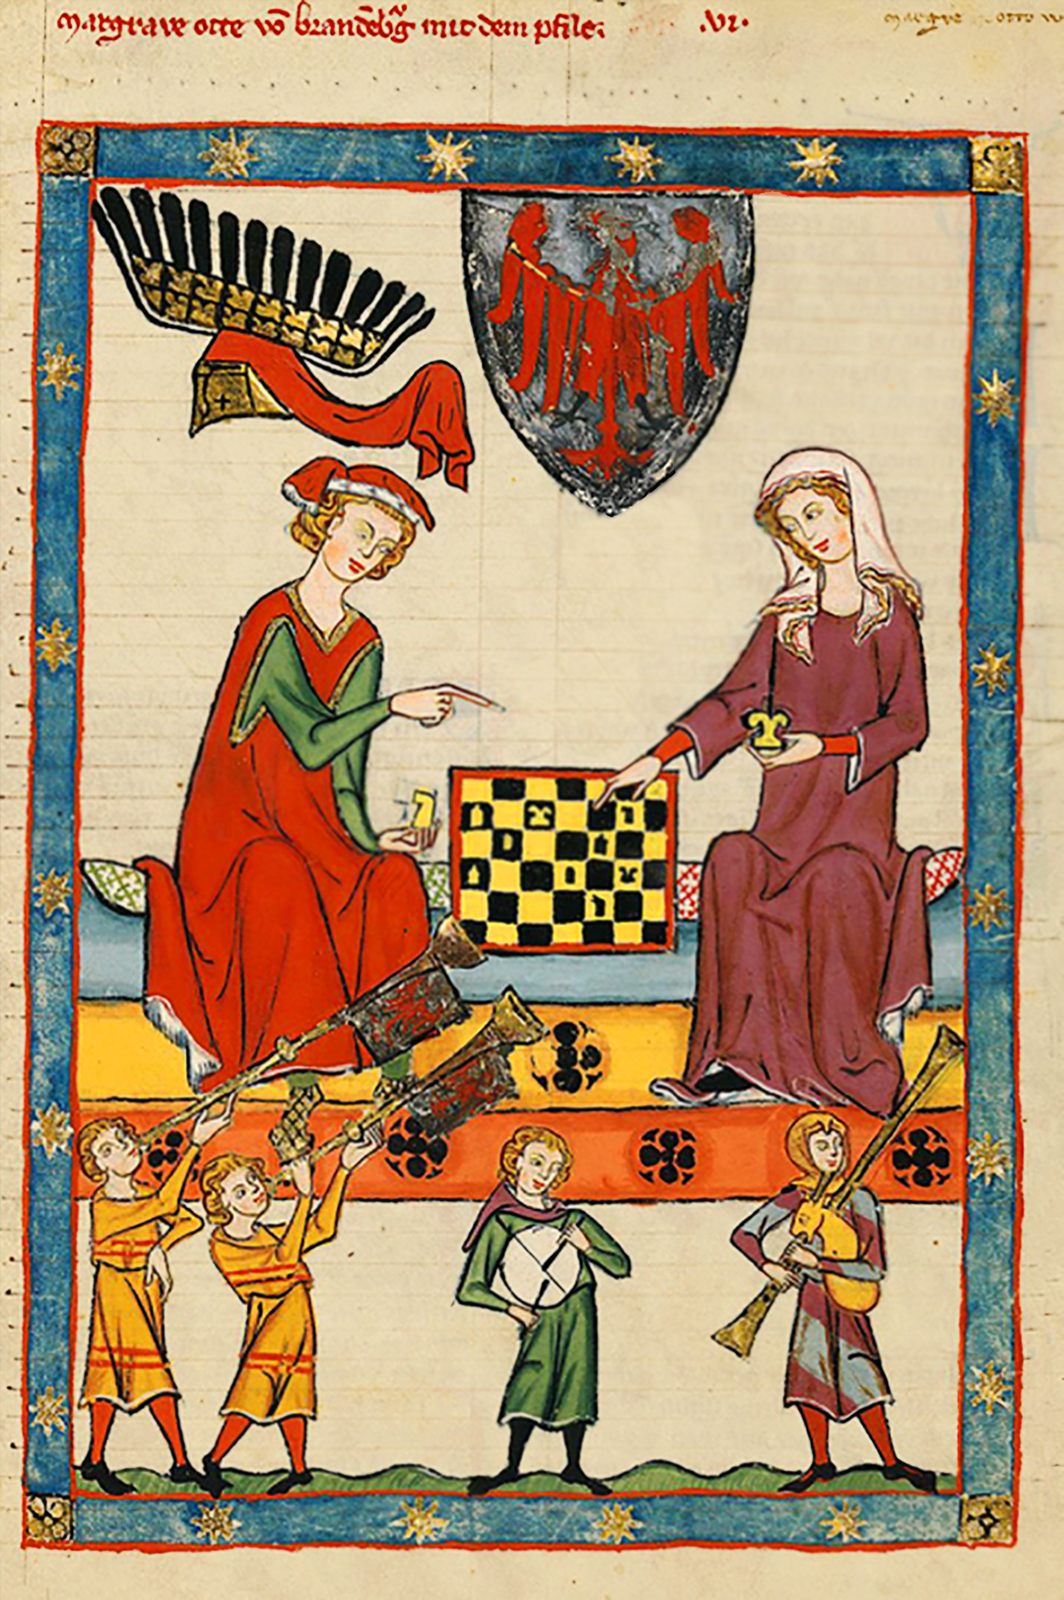 Rycerz i dama grający w szachy Rycerz i dama grający w szachy Źródło: Kodeks Manesse, około 1320 roku, miniatura, domena publiczna.